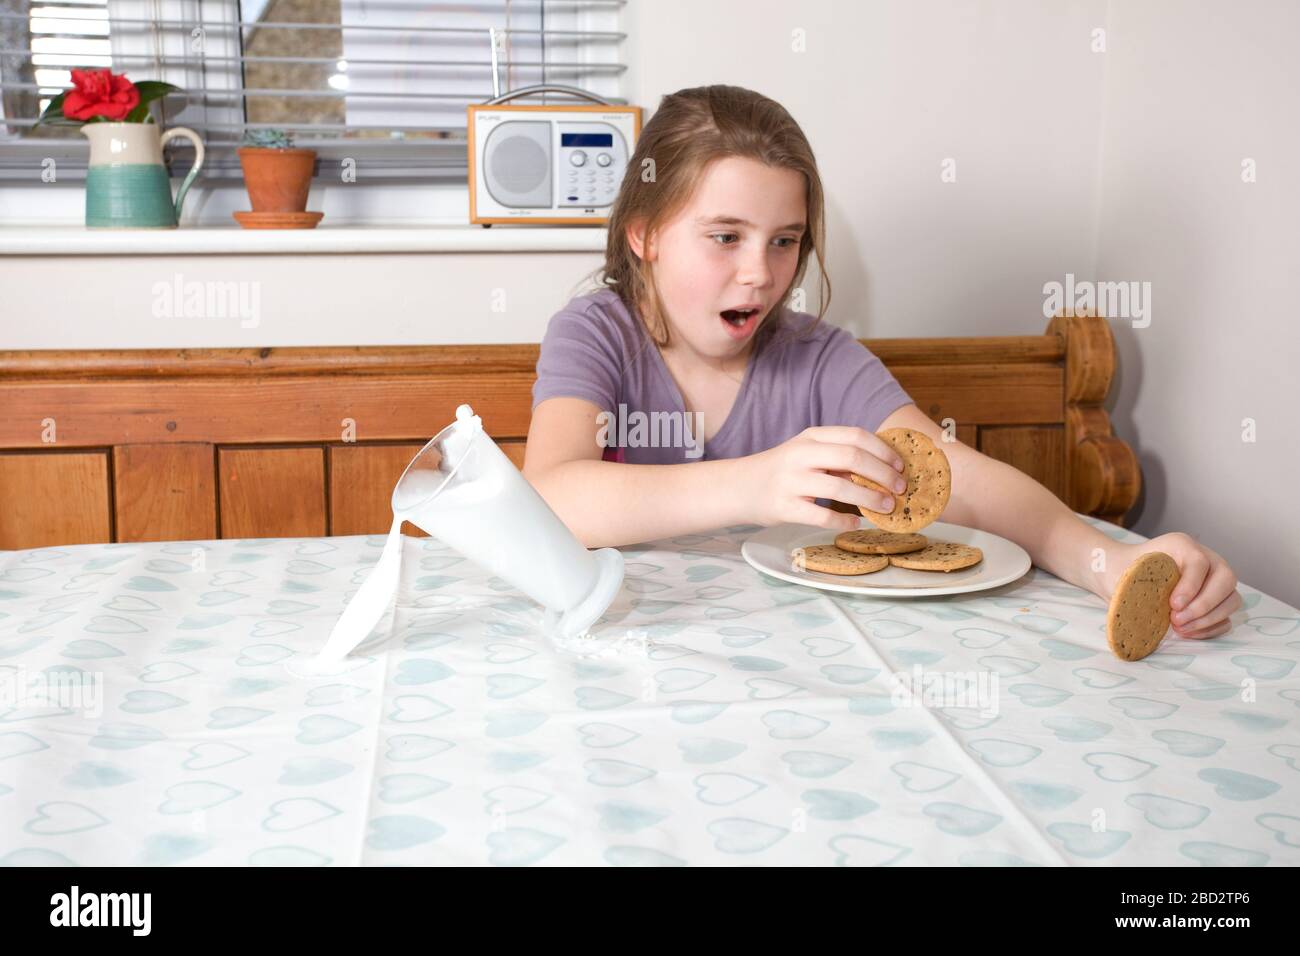 Giovane ragazza che versava un bicchiere di latte sul tavolo da cucina Foto Stock